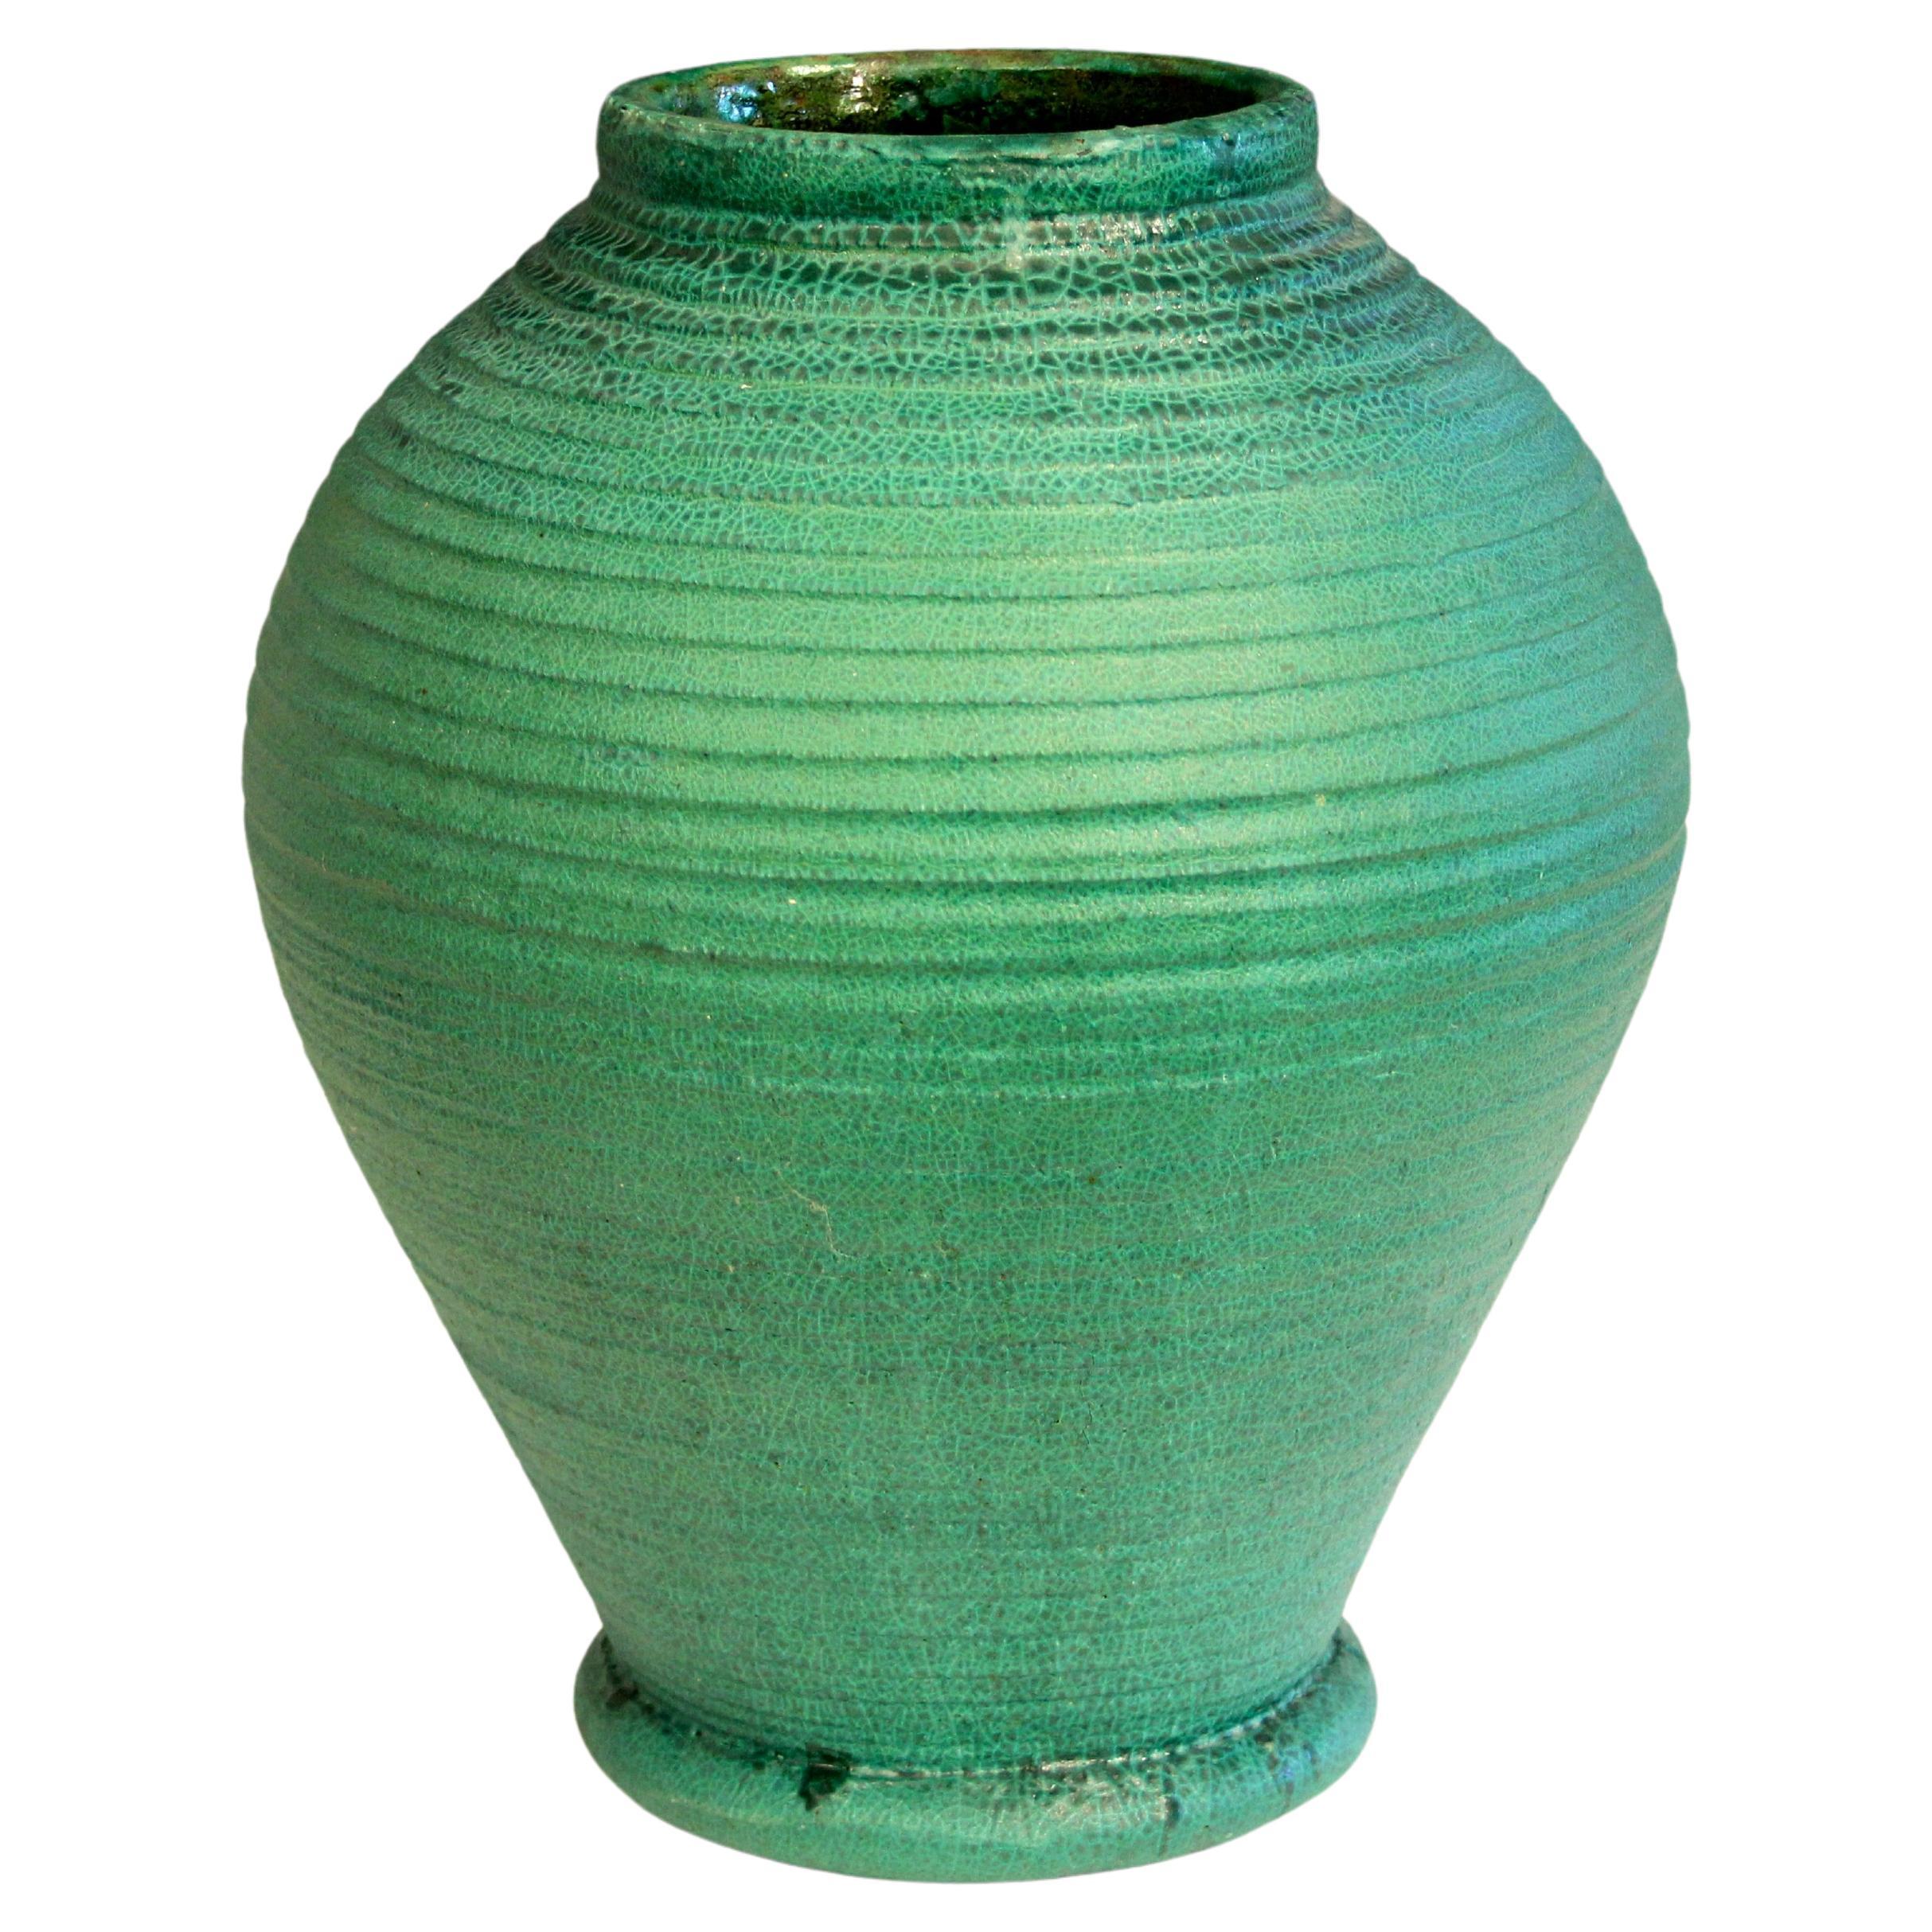 Huge 15" Merrimac Pottery Matt Green Arts & Crafts Ribbed Turned Antique Vase For Sale